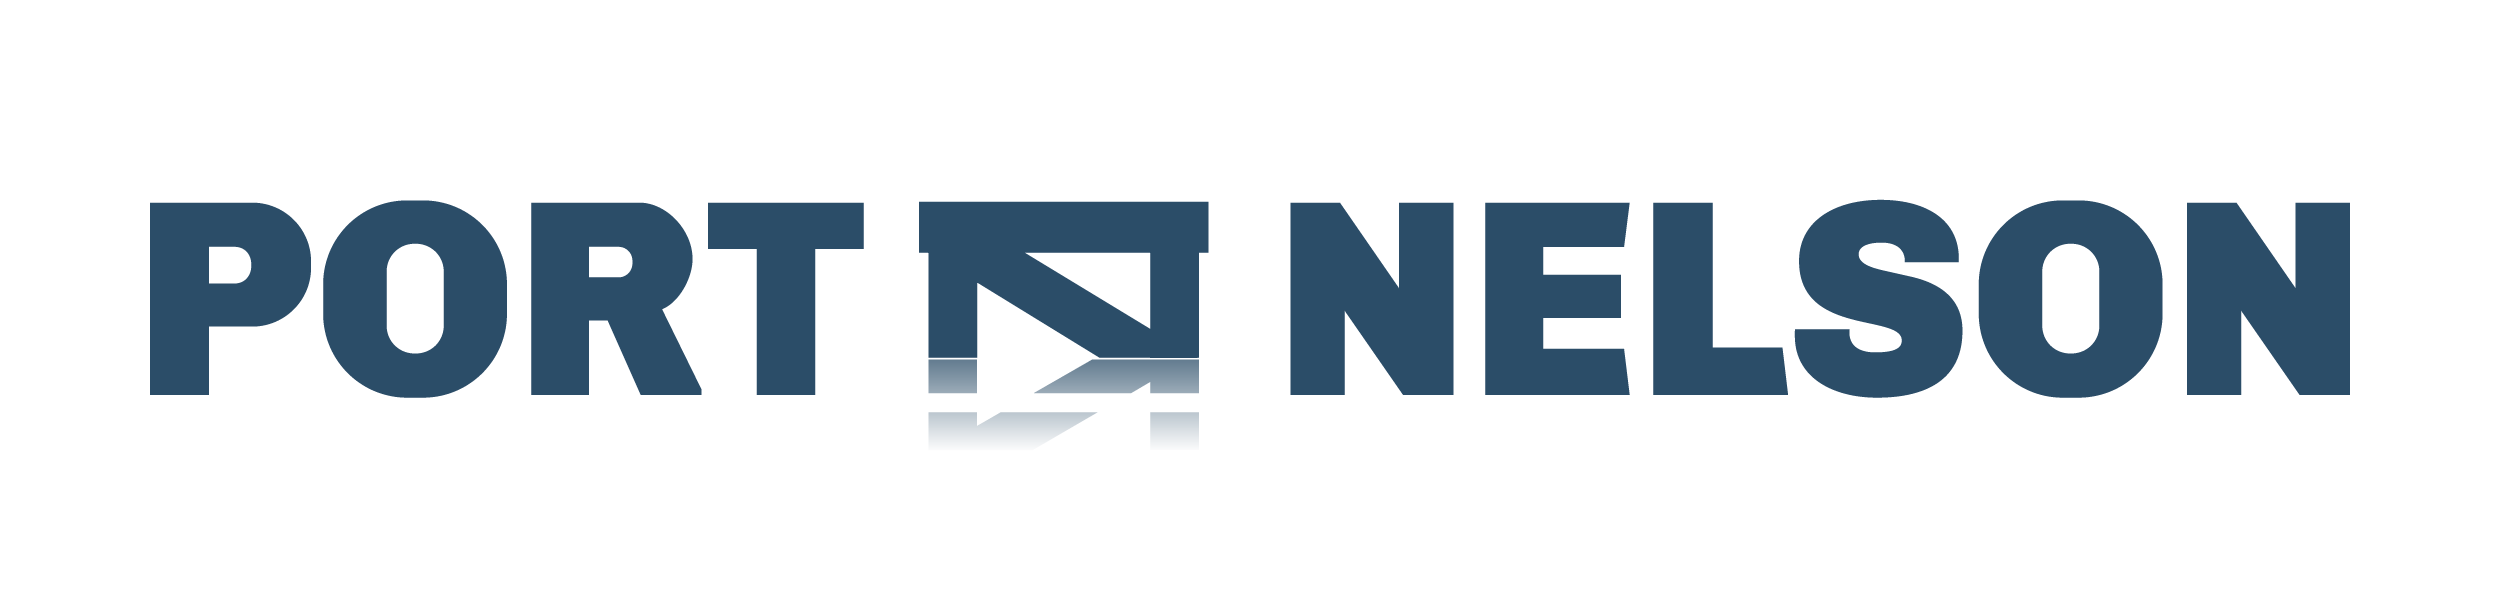 Port Nelson logo